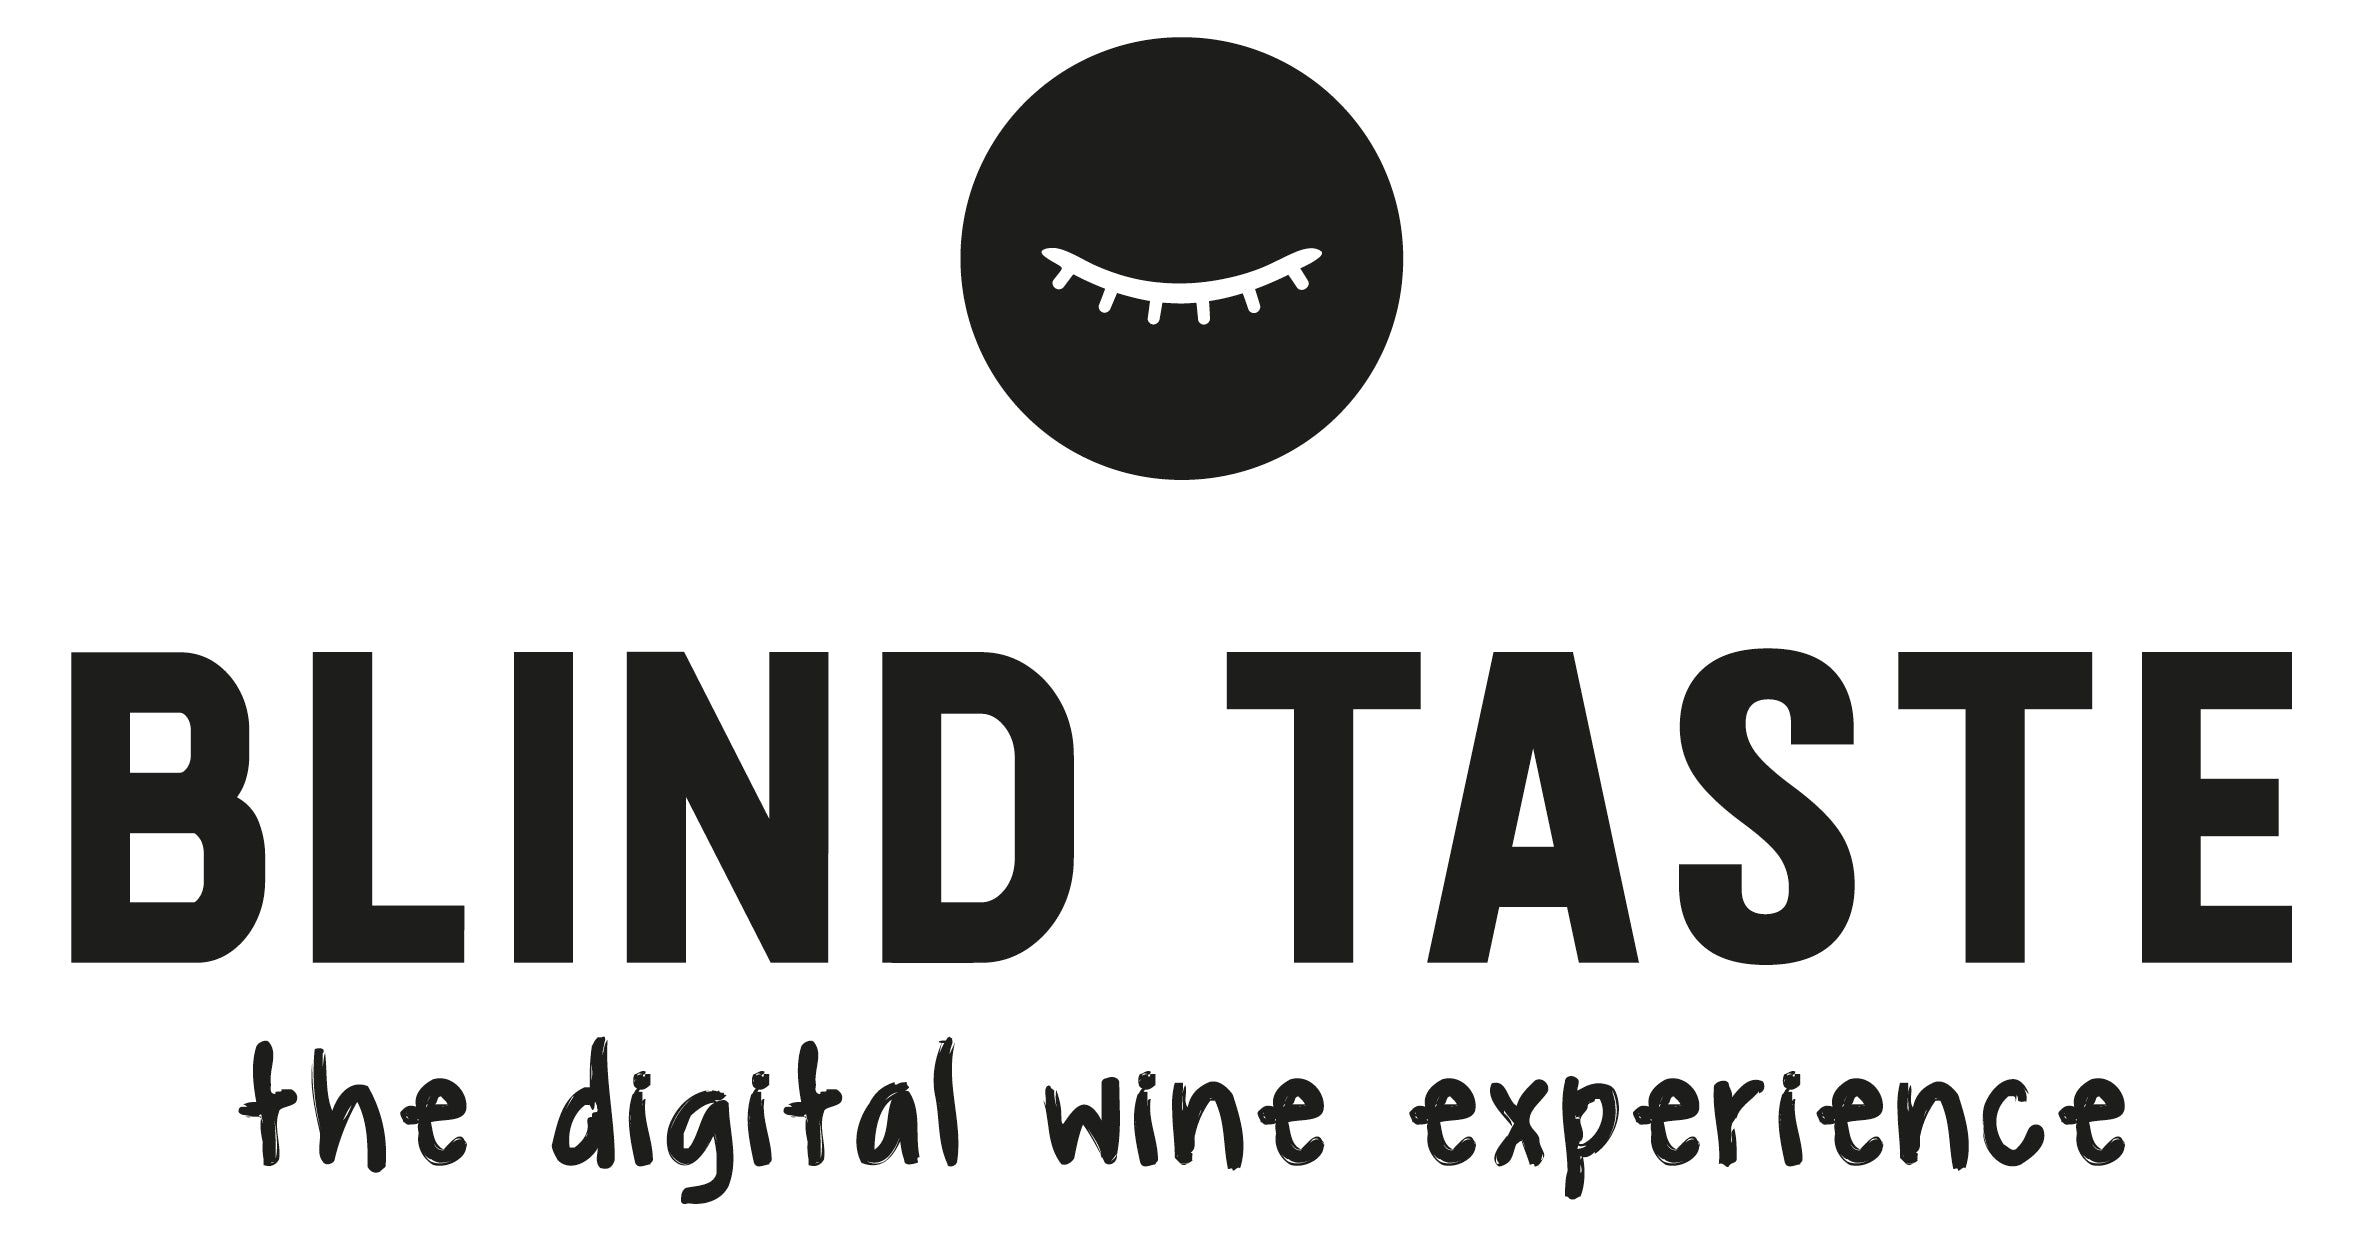 Blind-Taste.com Geschenkgutschein